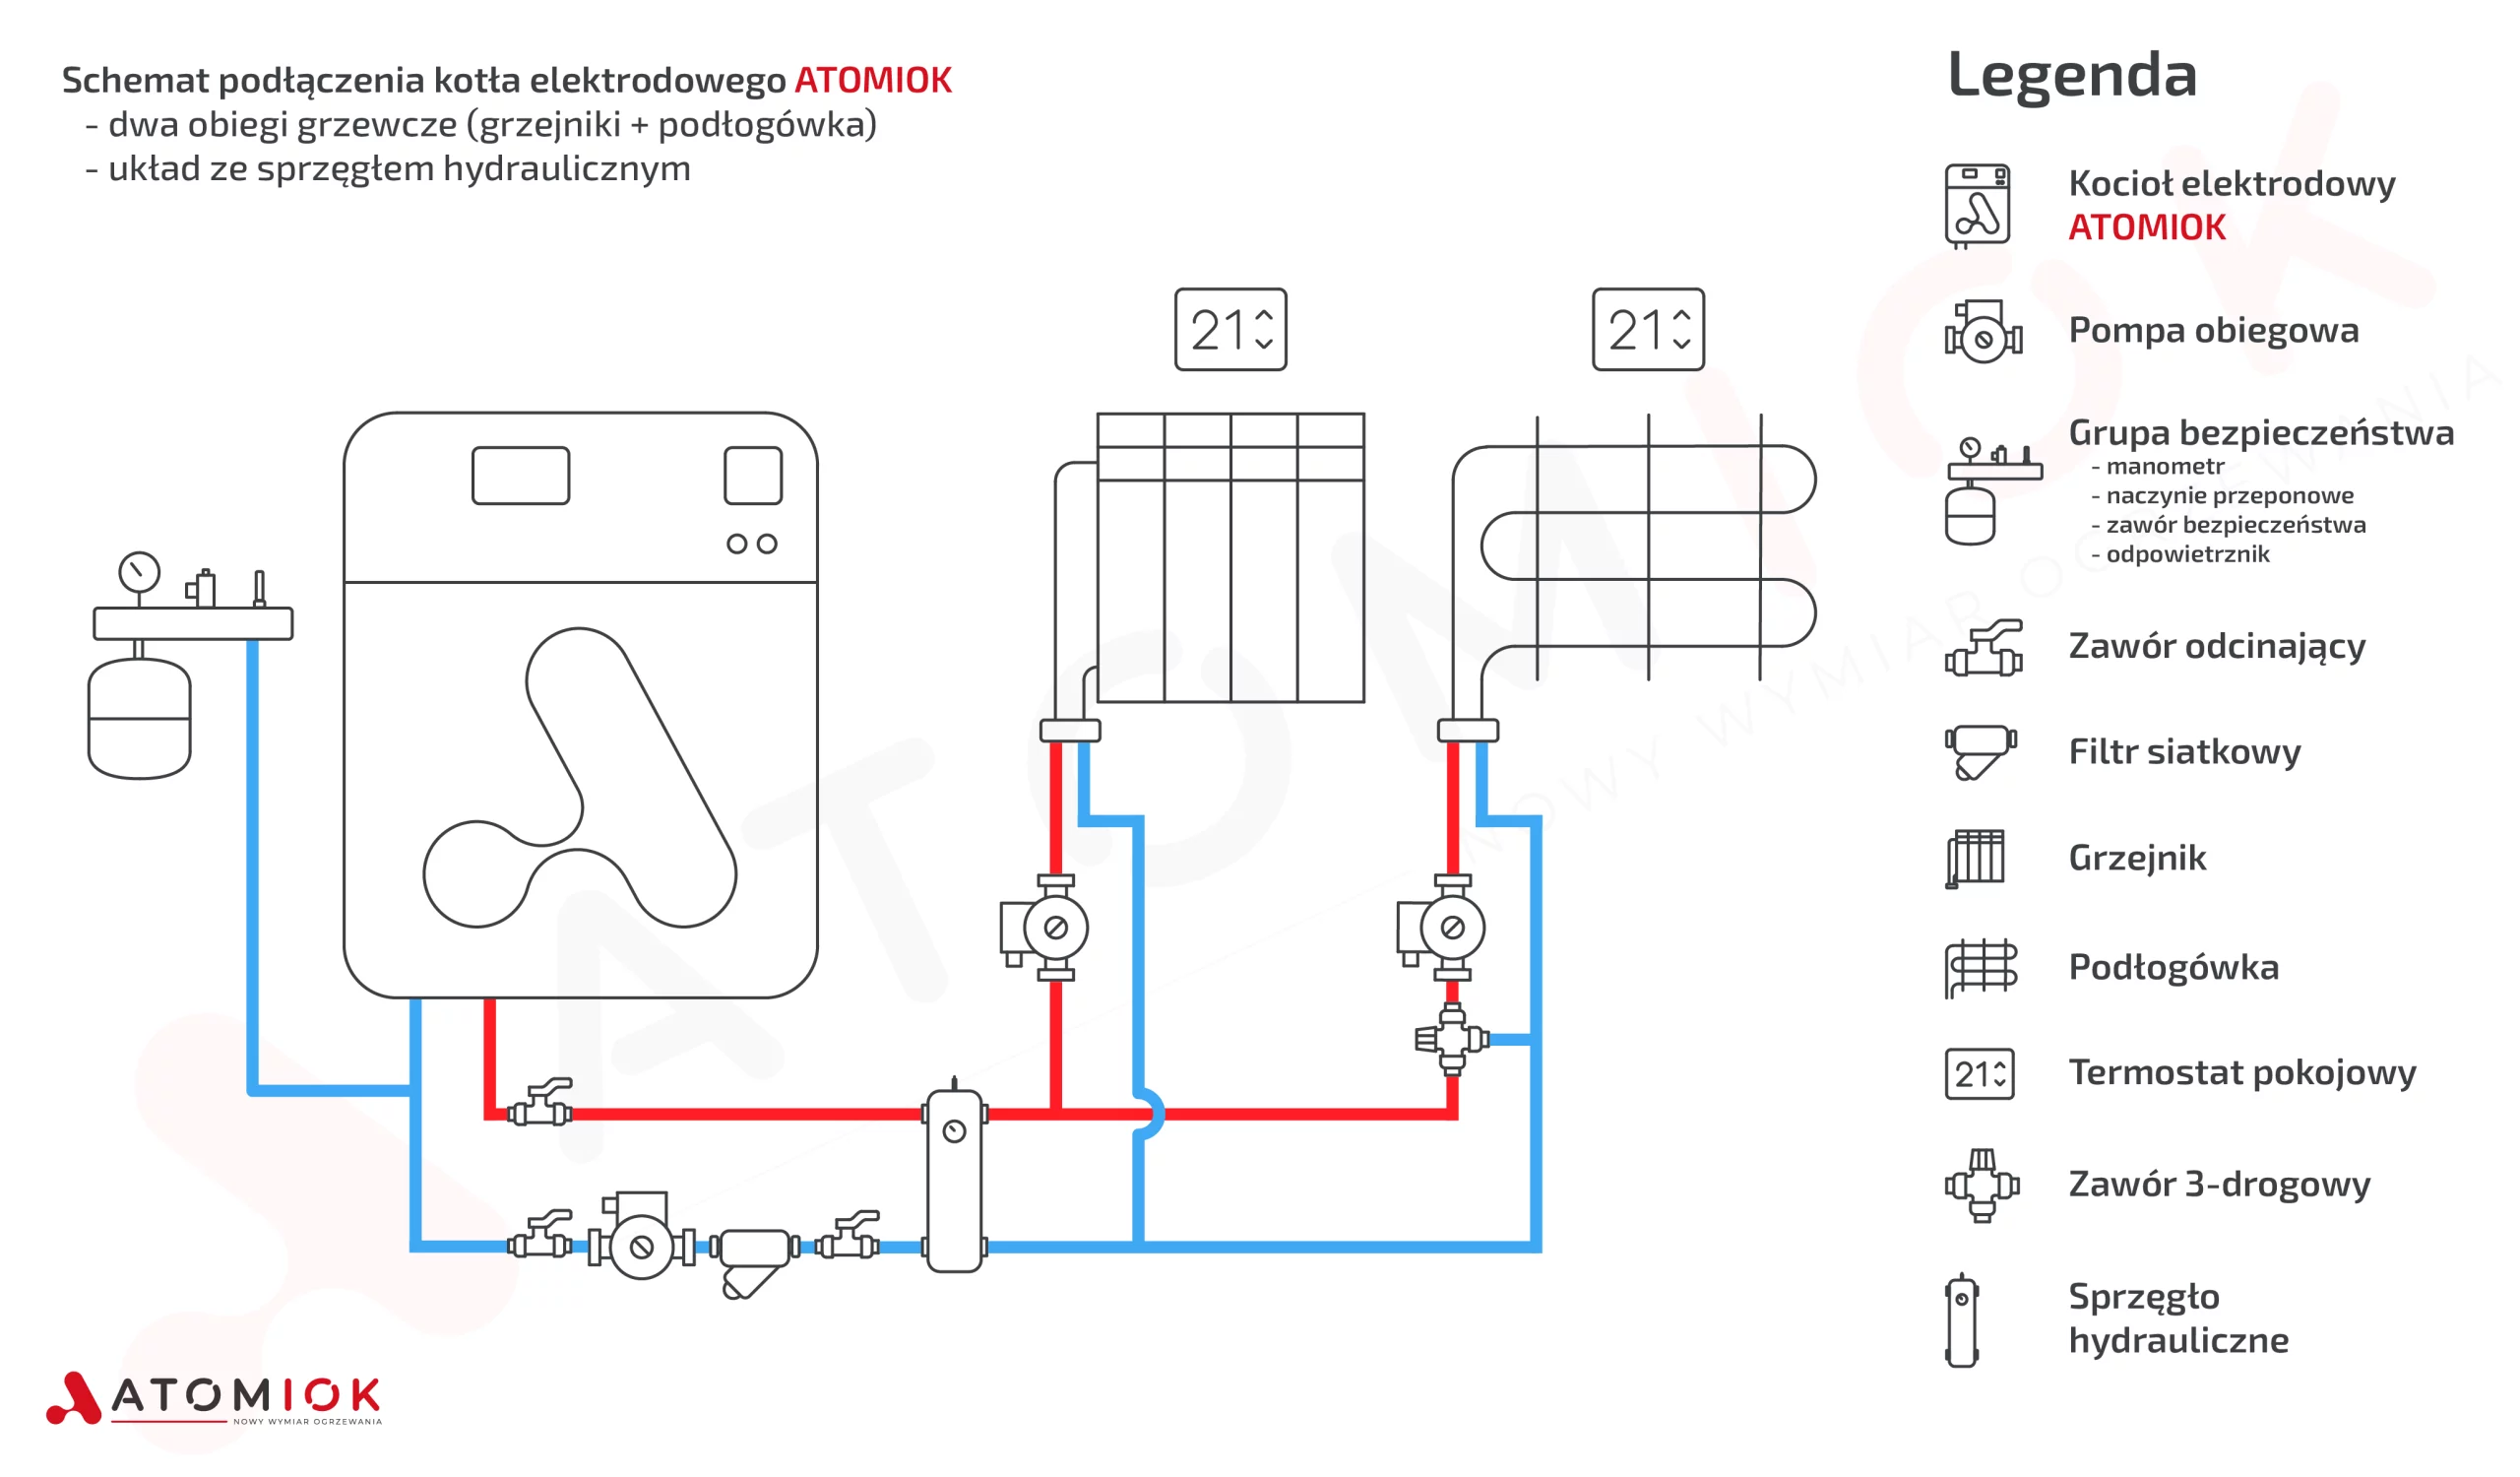 Schemat podłączenia kotła elektrodowego ATOMIOK z dwoma obiegami grzewczymi (grzejniki + podłogówka)